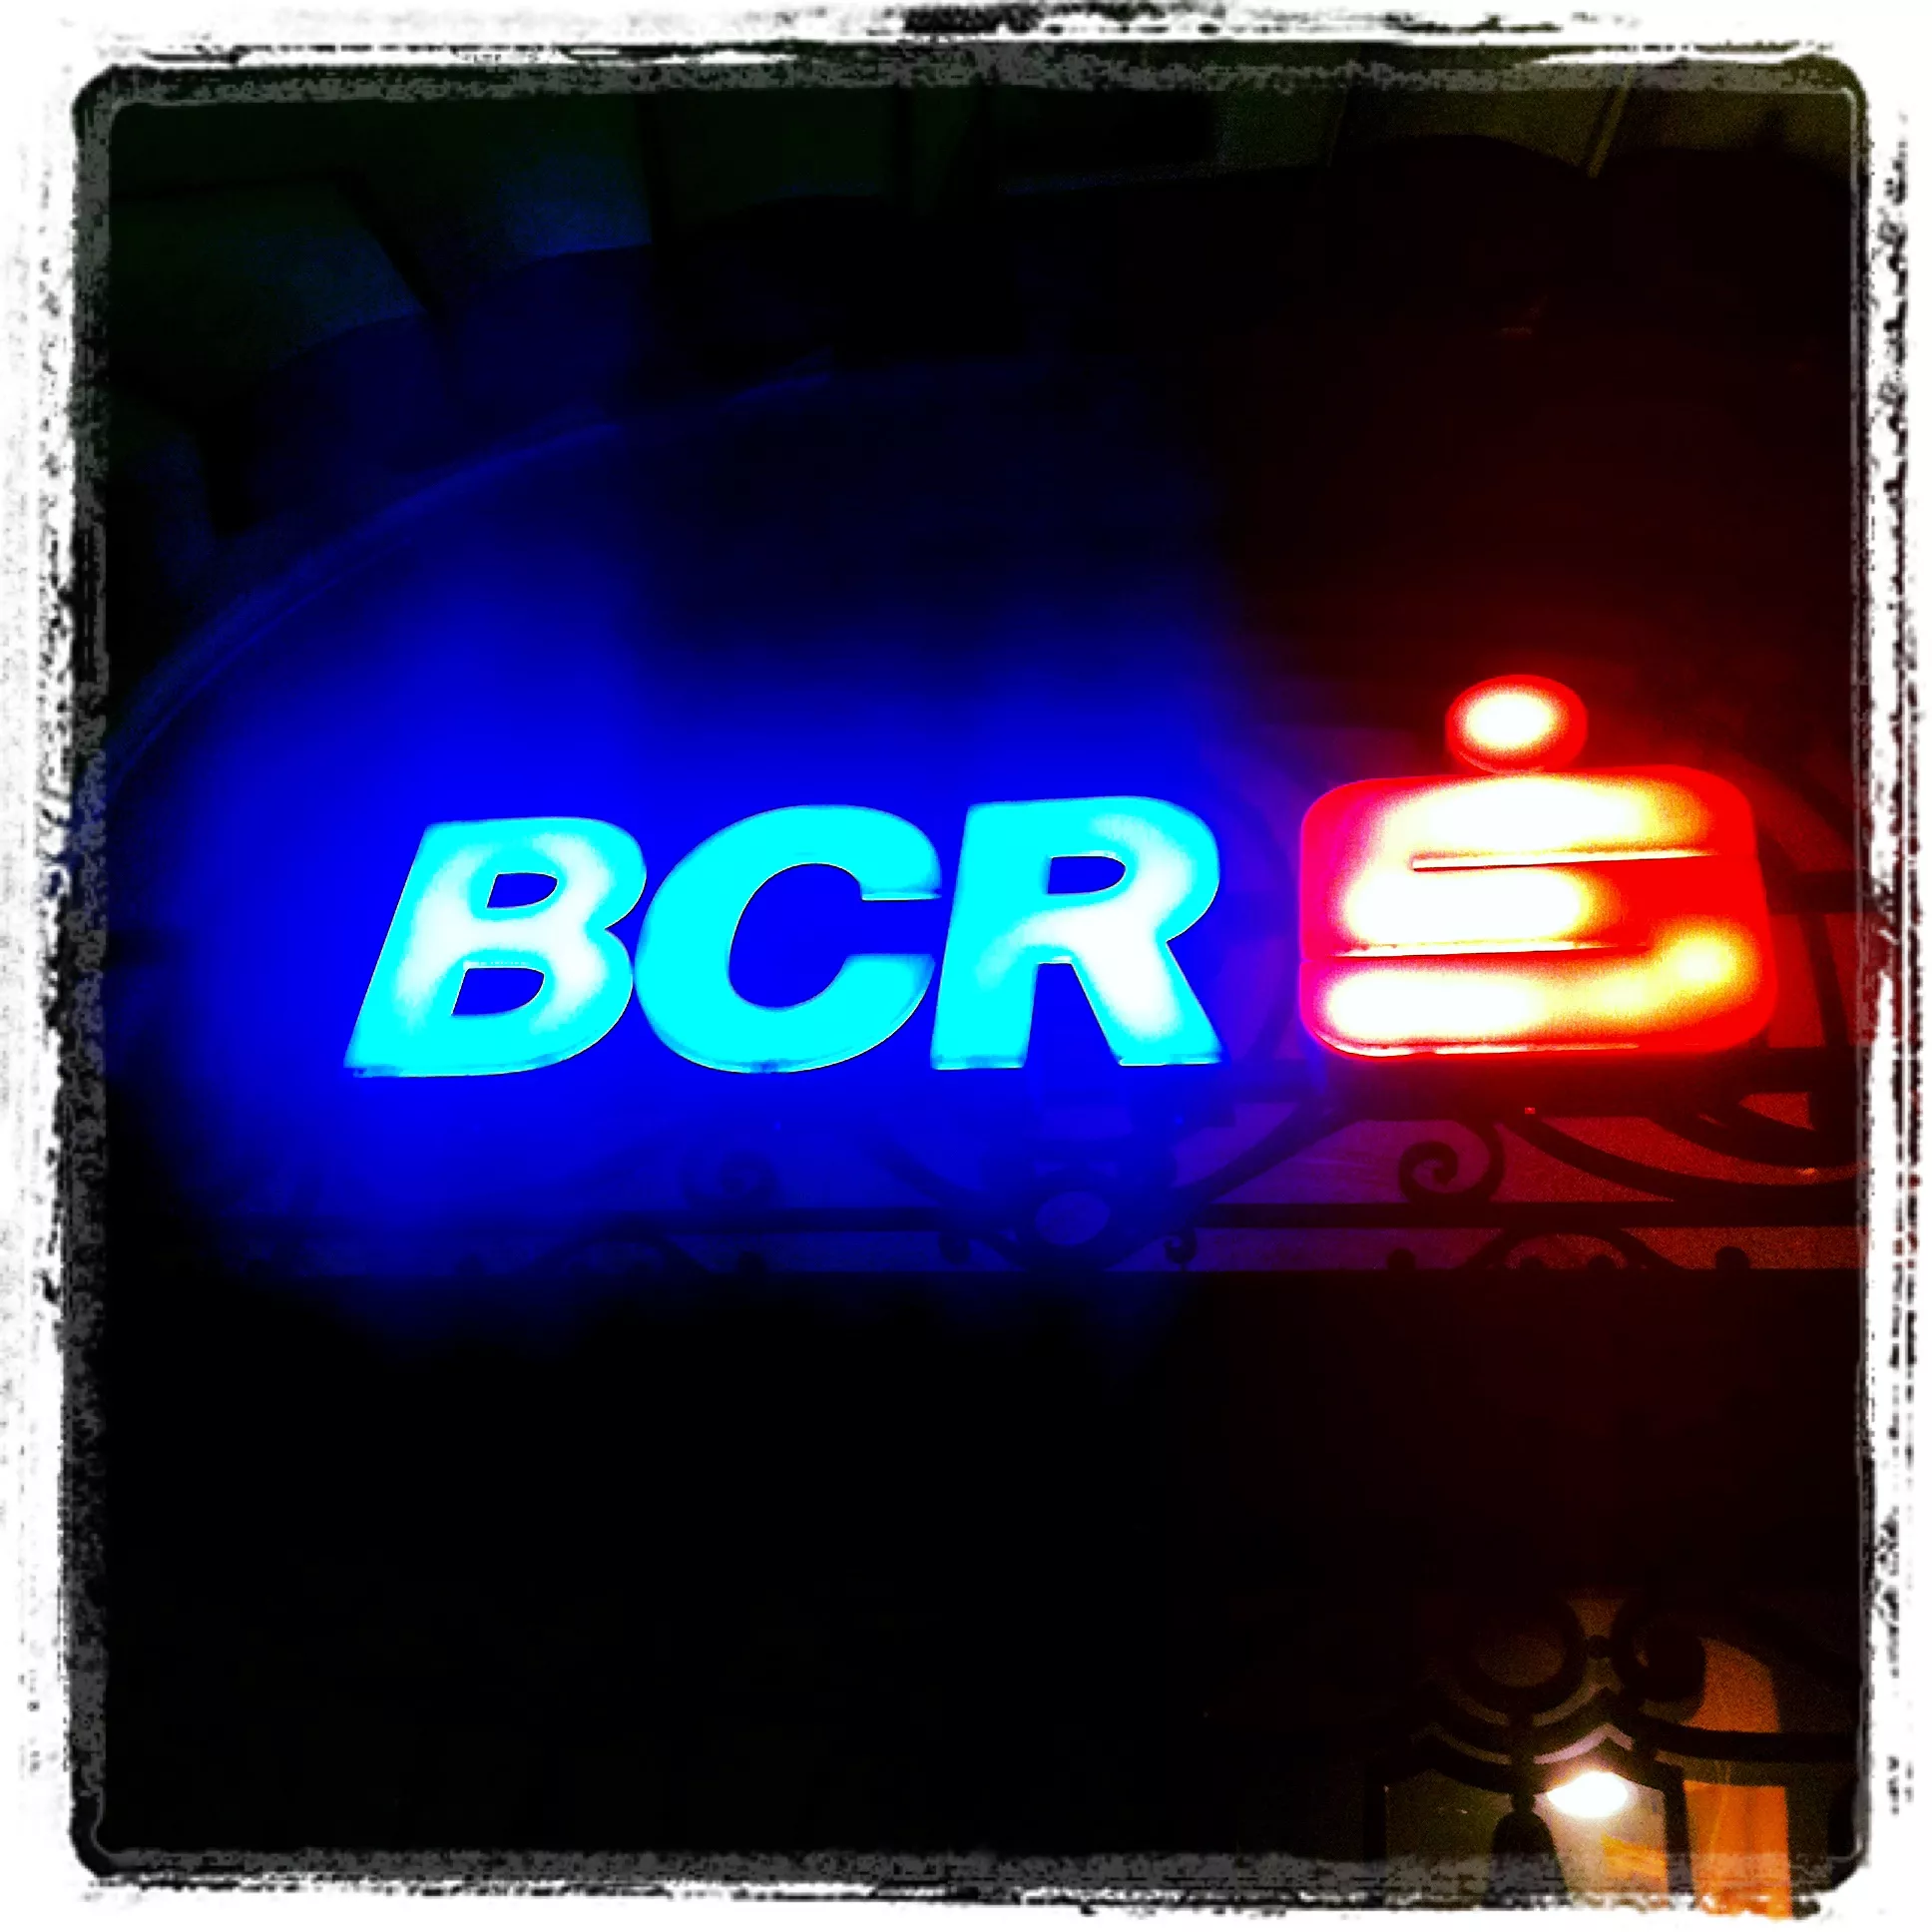 BRC - Romanian bank logo